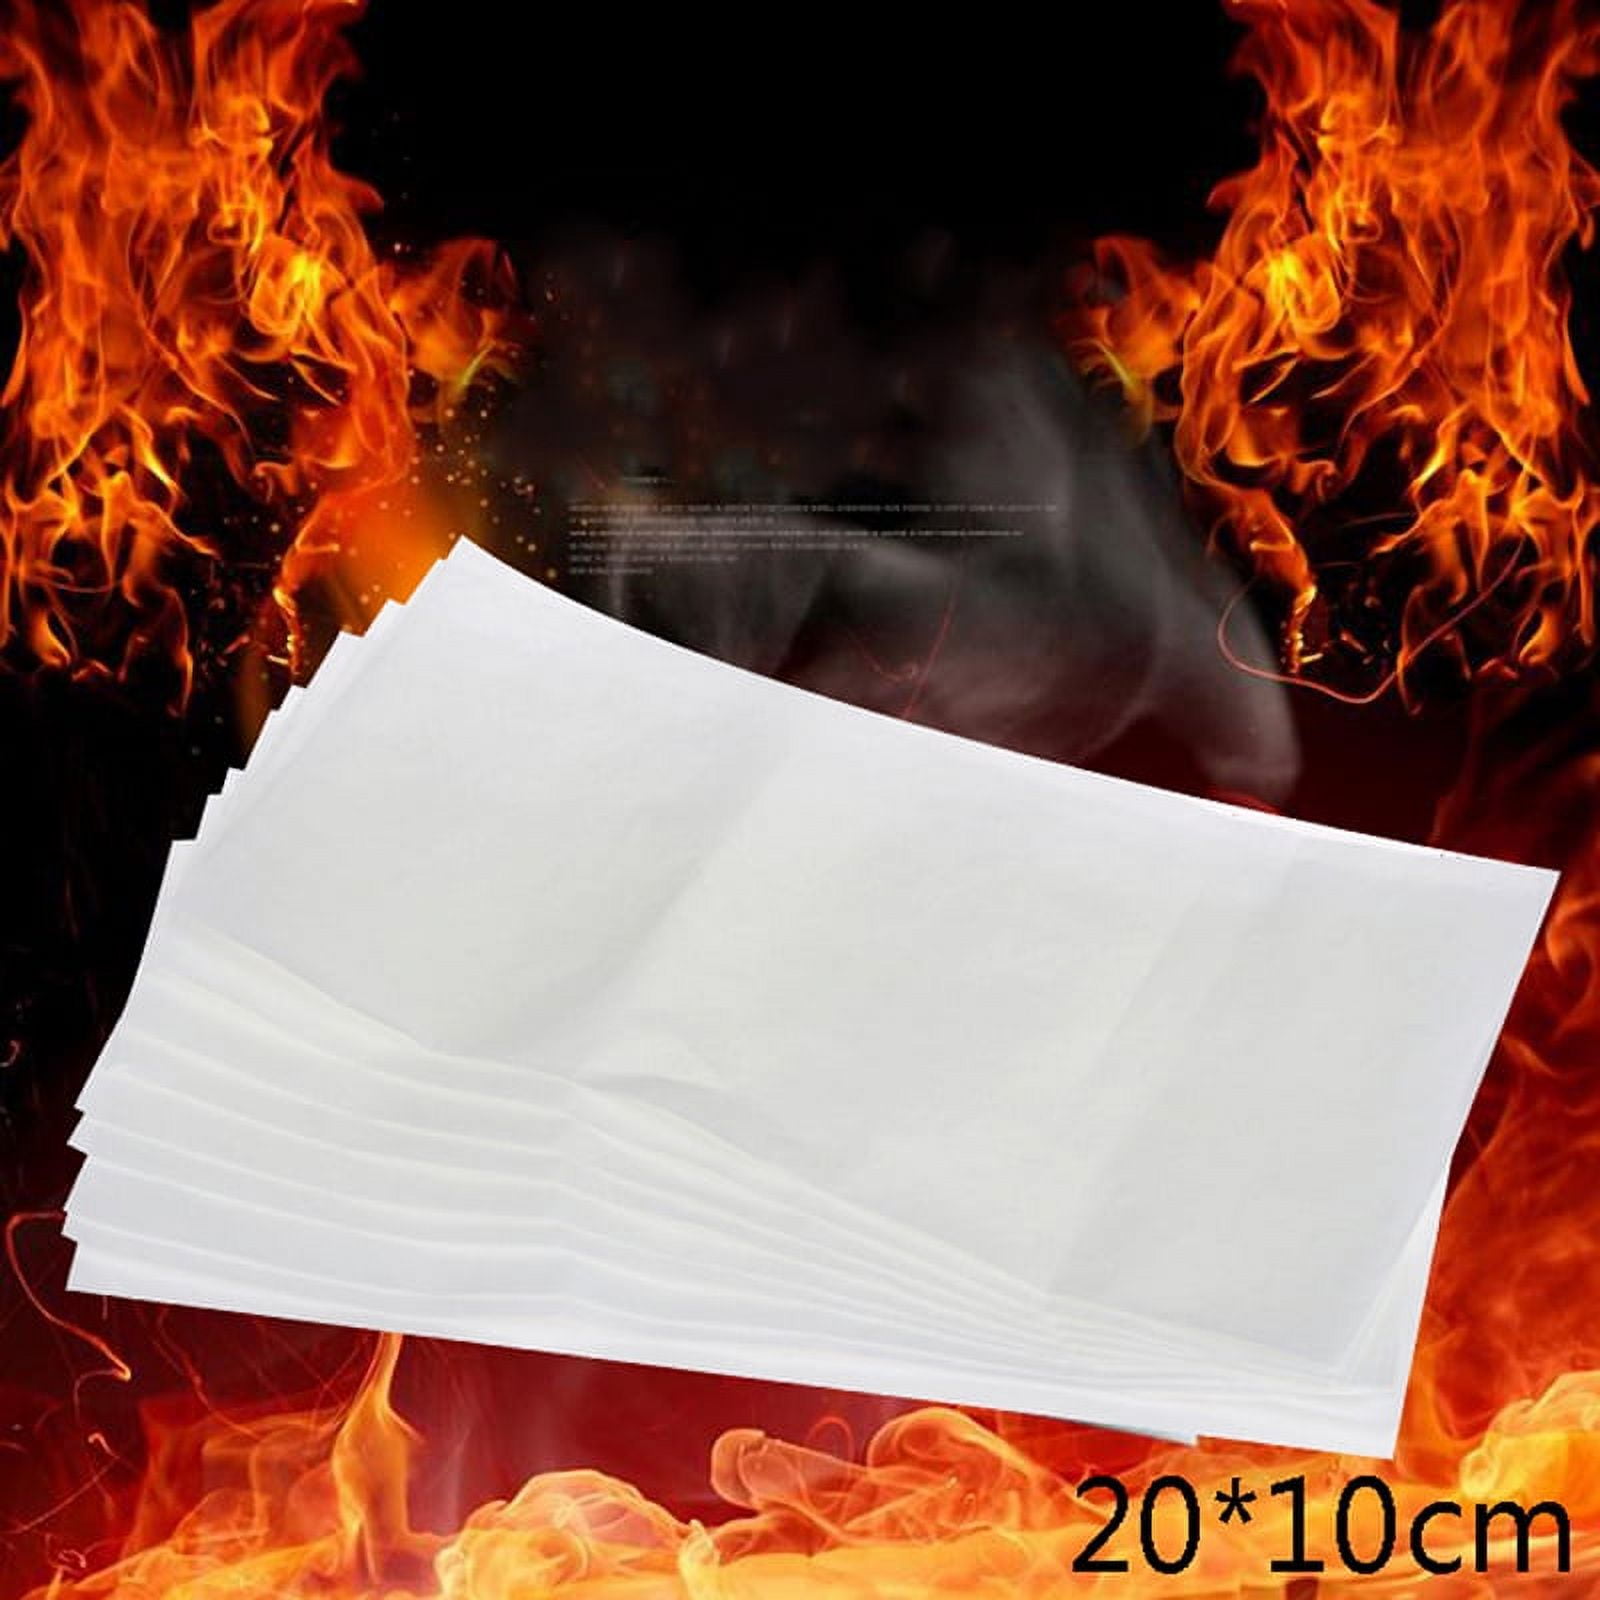 Papier Flash Noir – Ultimate Fire Products